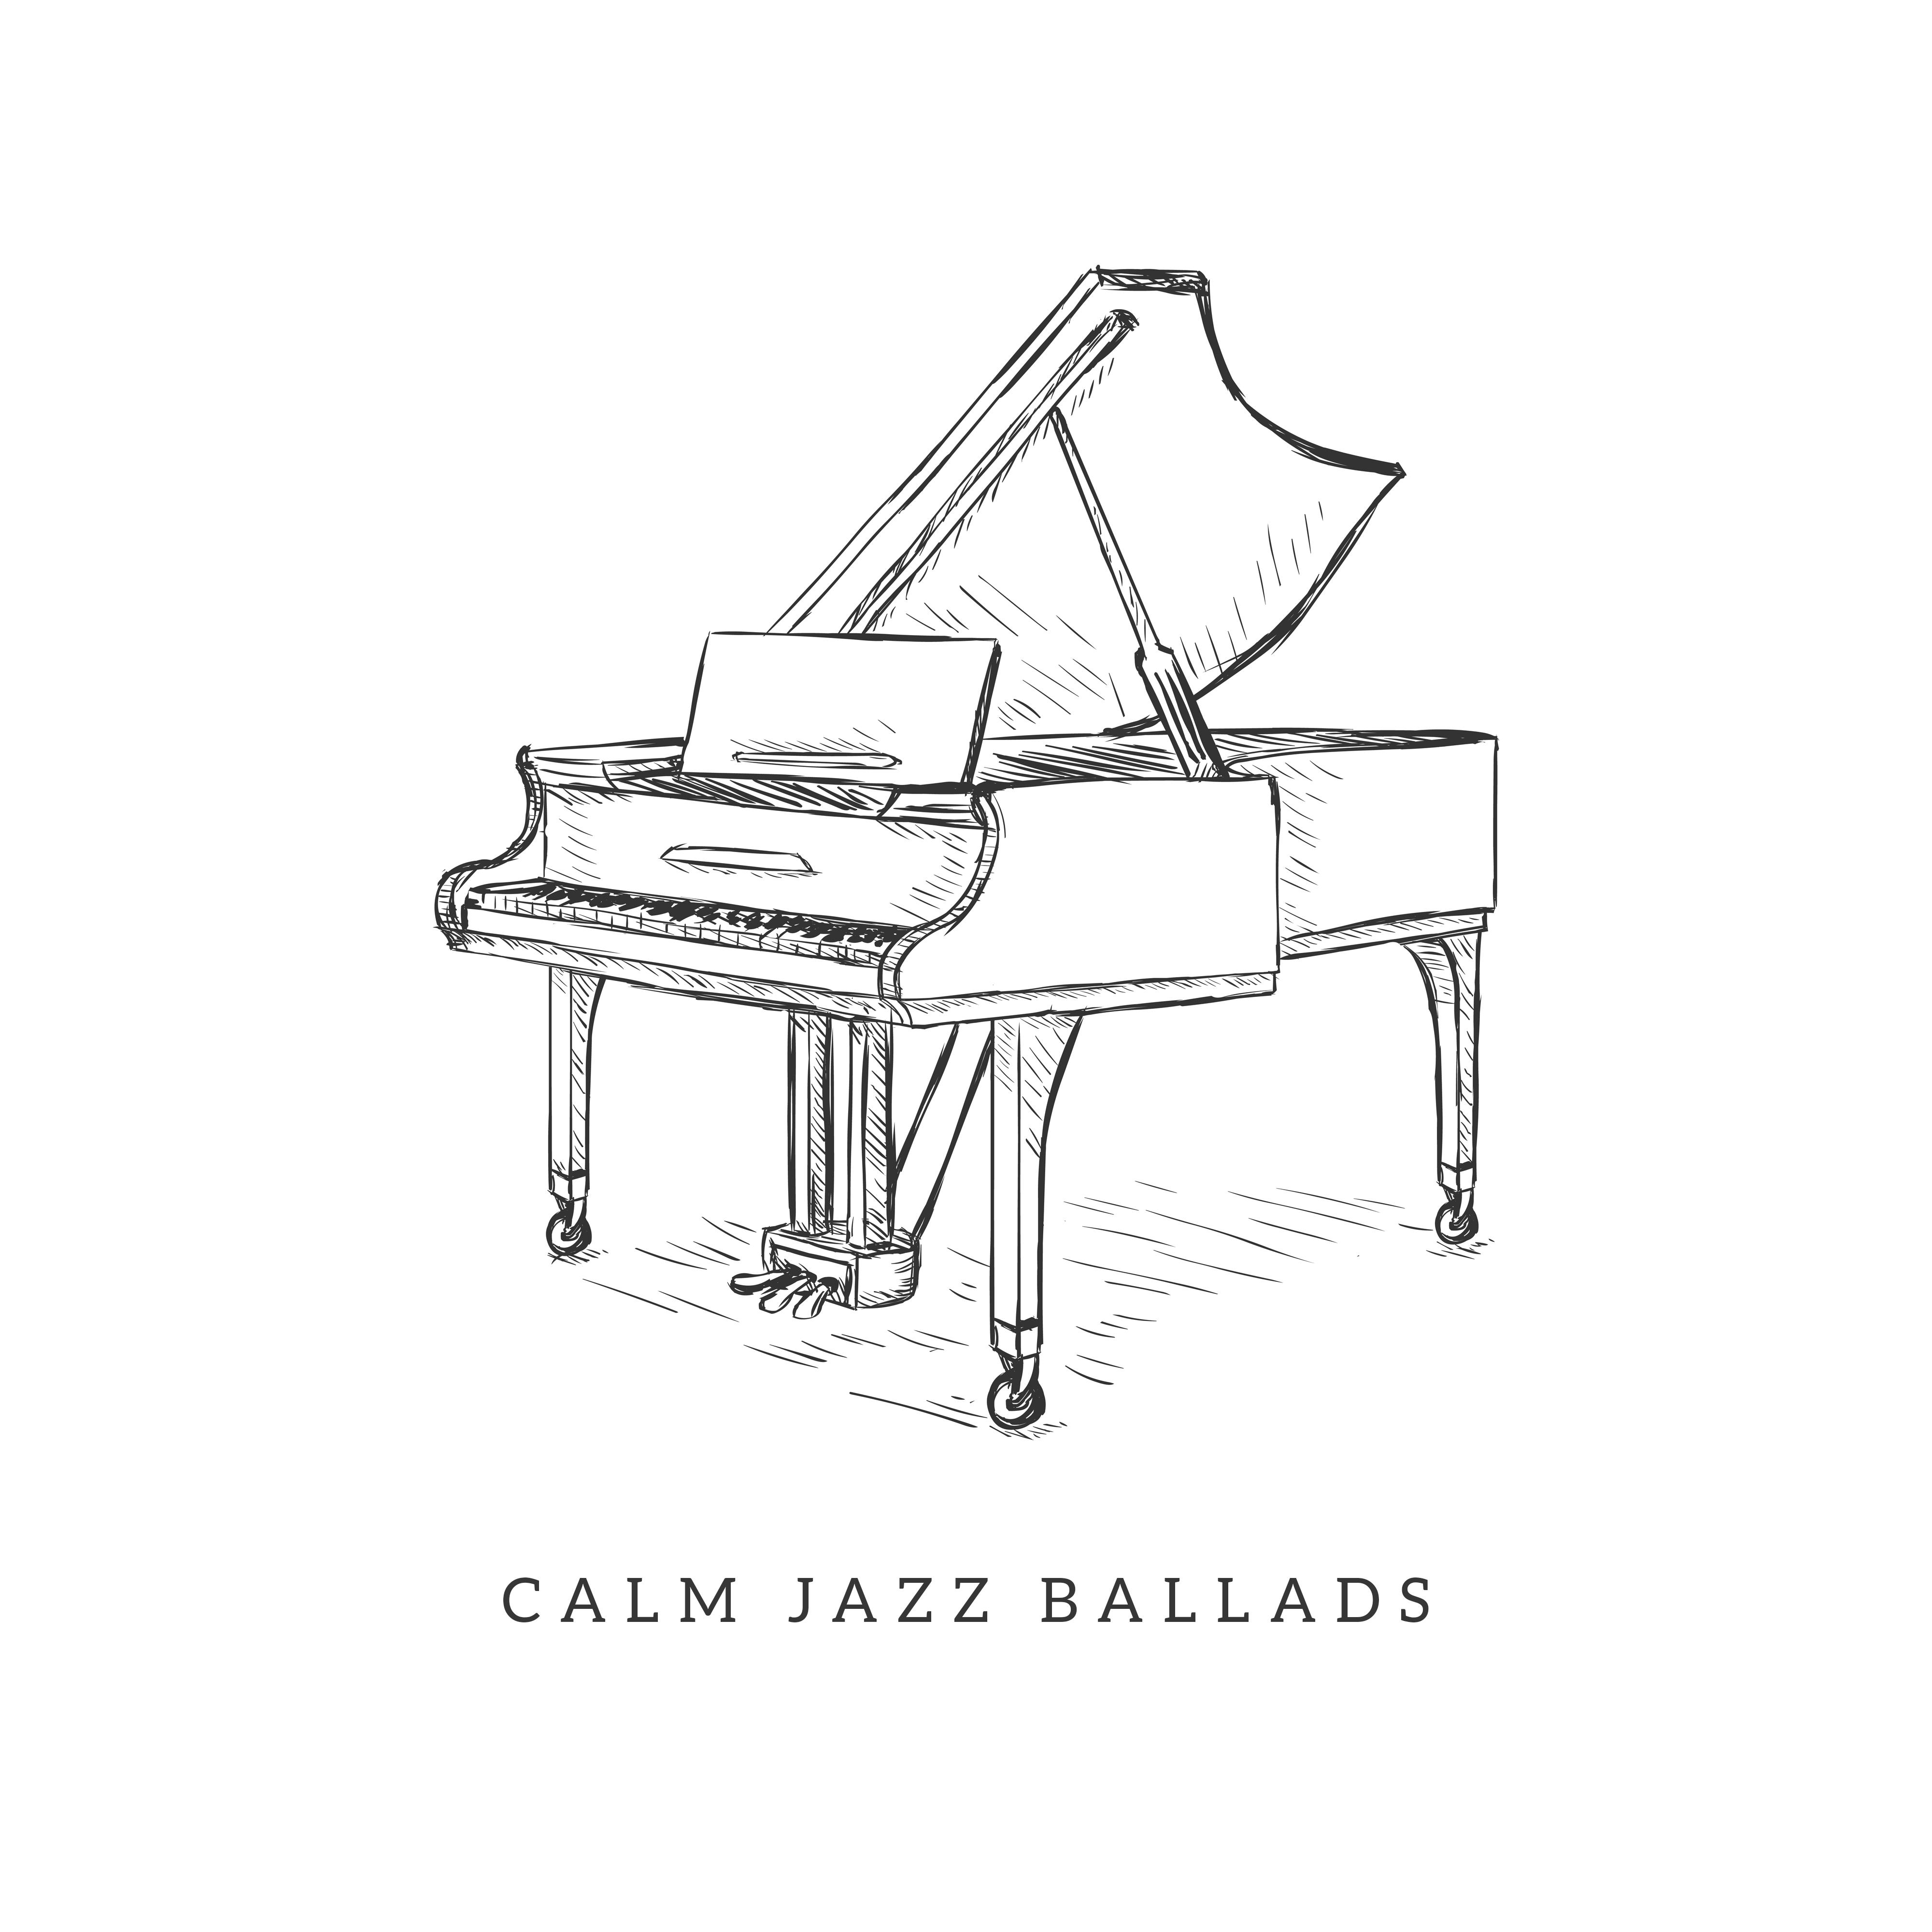 Calm Jazz Ballads